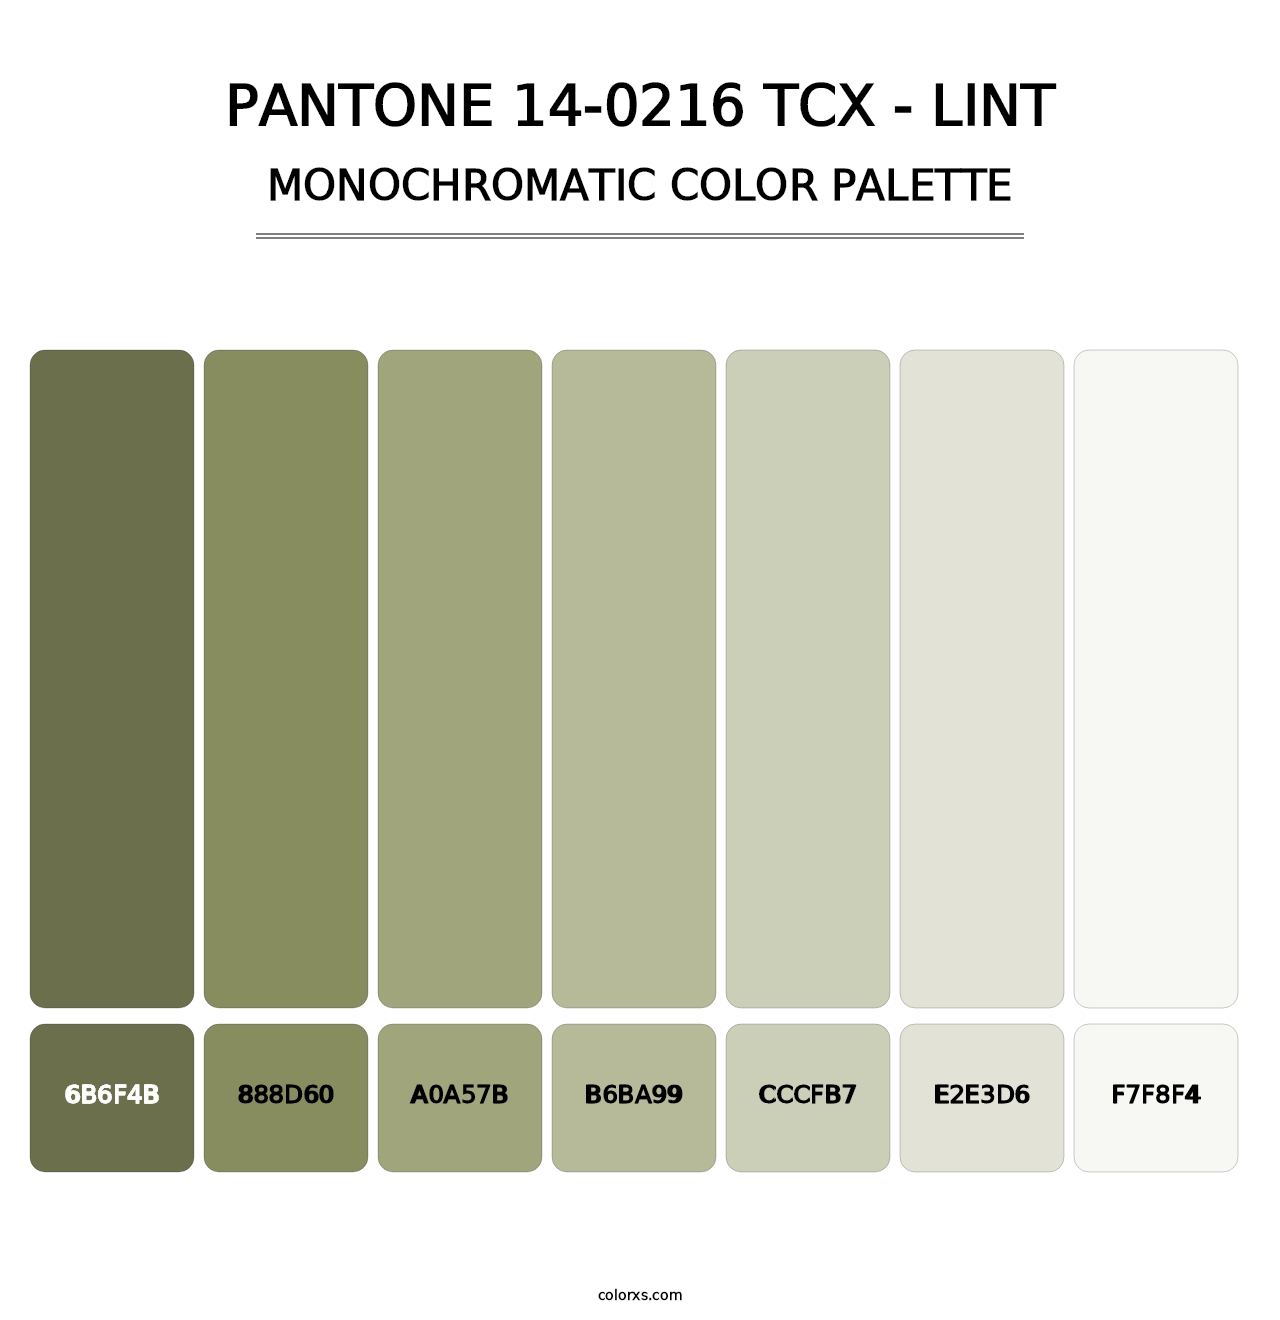 PANTONE 14-0216 TCX - Lint - Monochromatic Color Palette